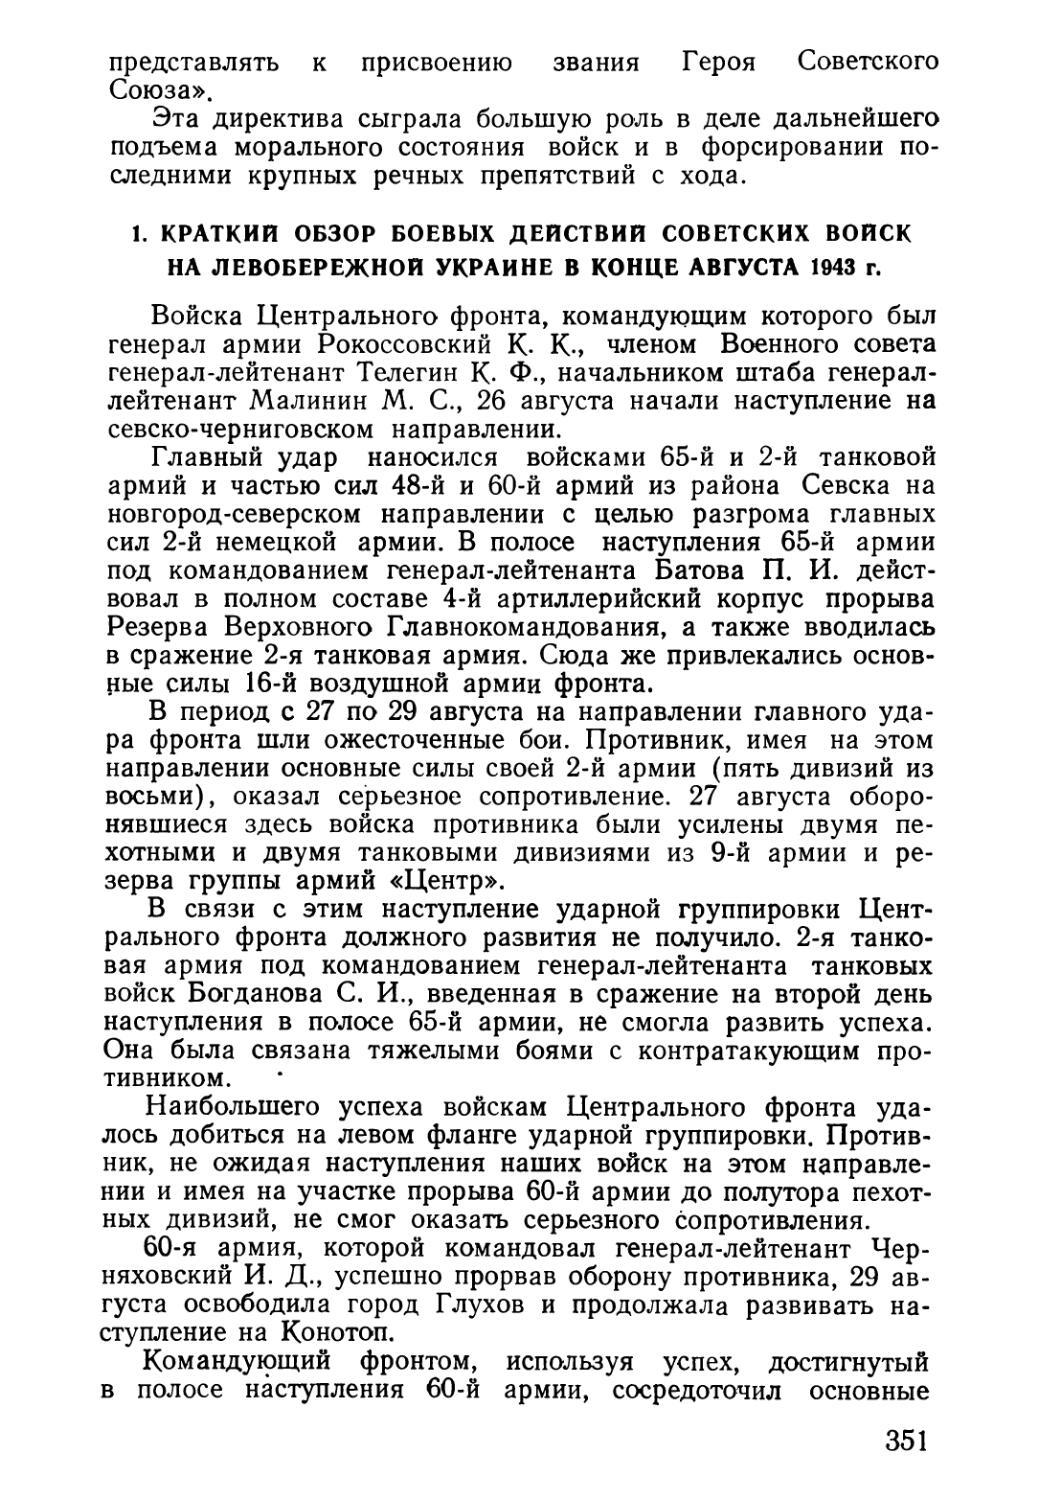 1. Краткий обзор боевых действий советских войск на Левобережной Украине в конце августа 1943 г